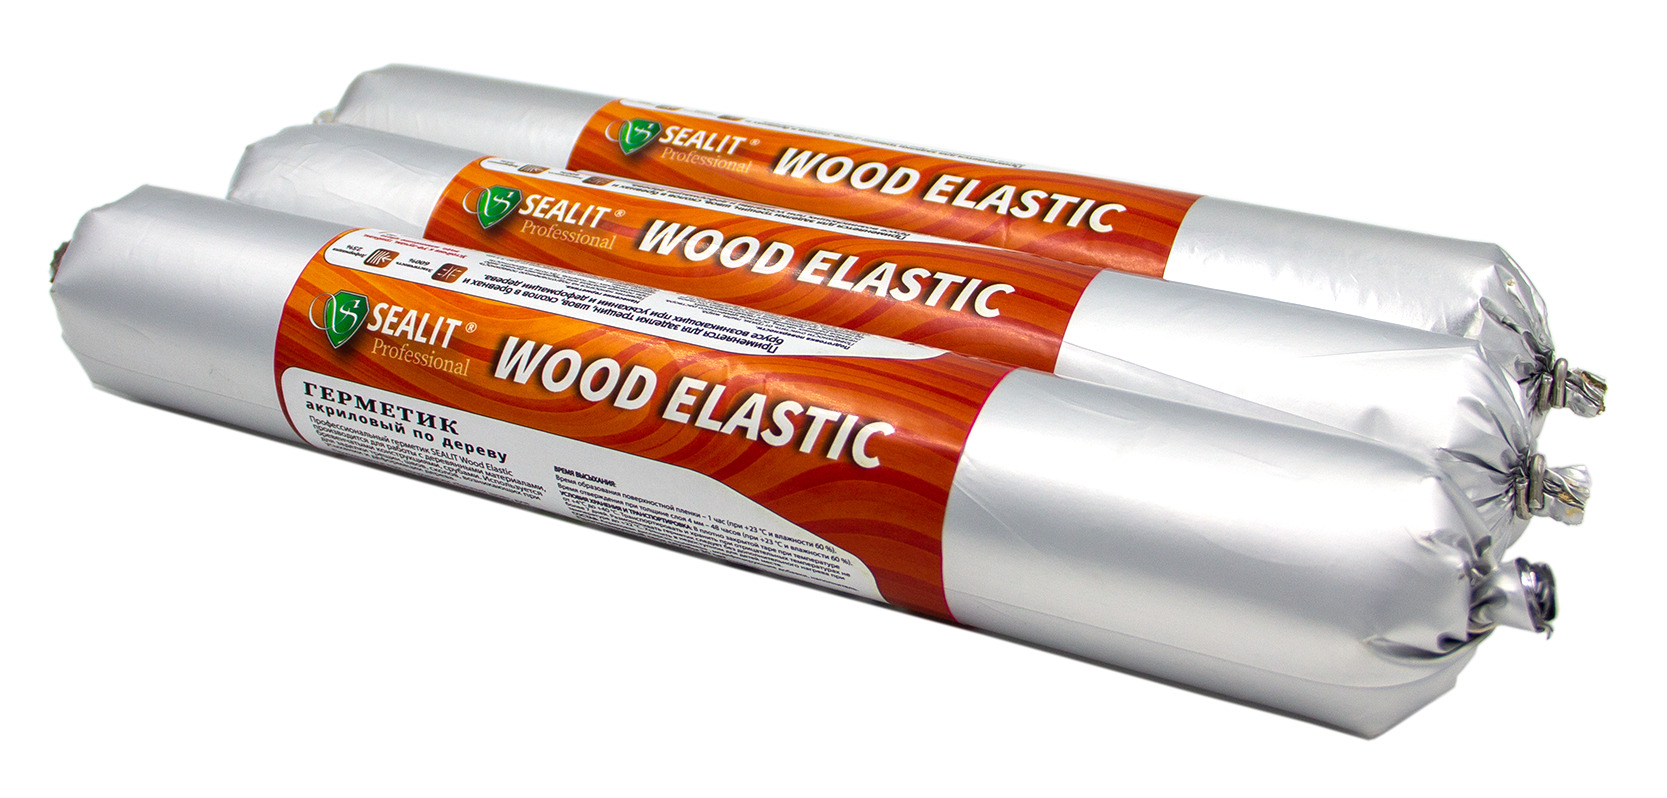 Герметик для дерева акриловый Sealit Wood Elastic, 900 гр, Сосна герметик акриловый для дерева kudo ksk 315 280 мл сосна